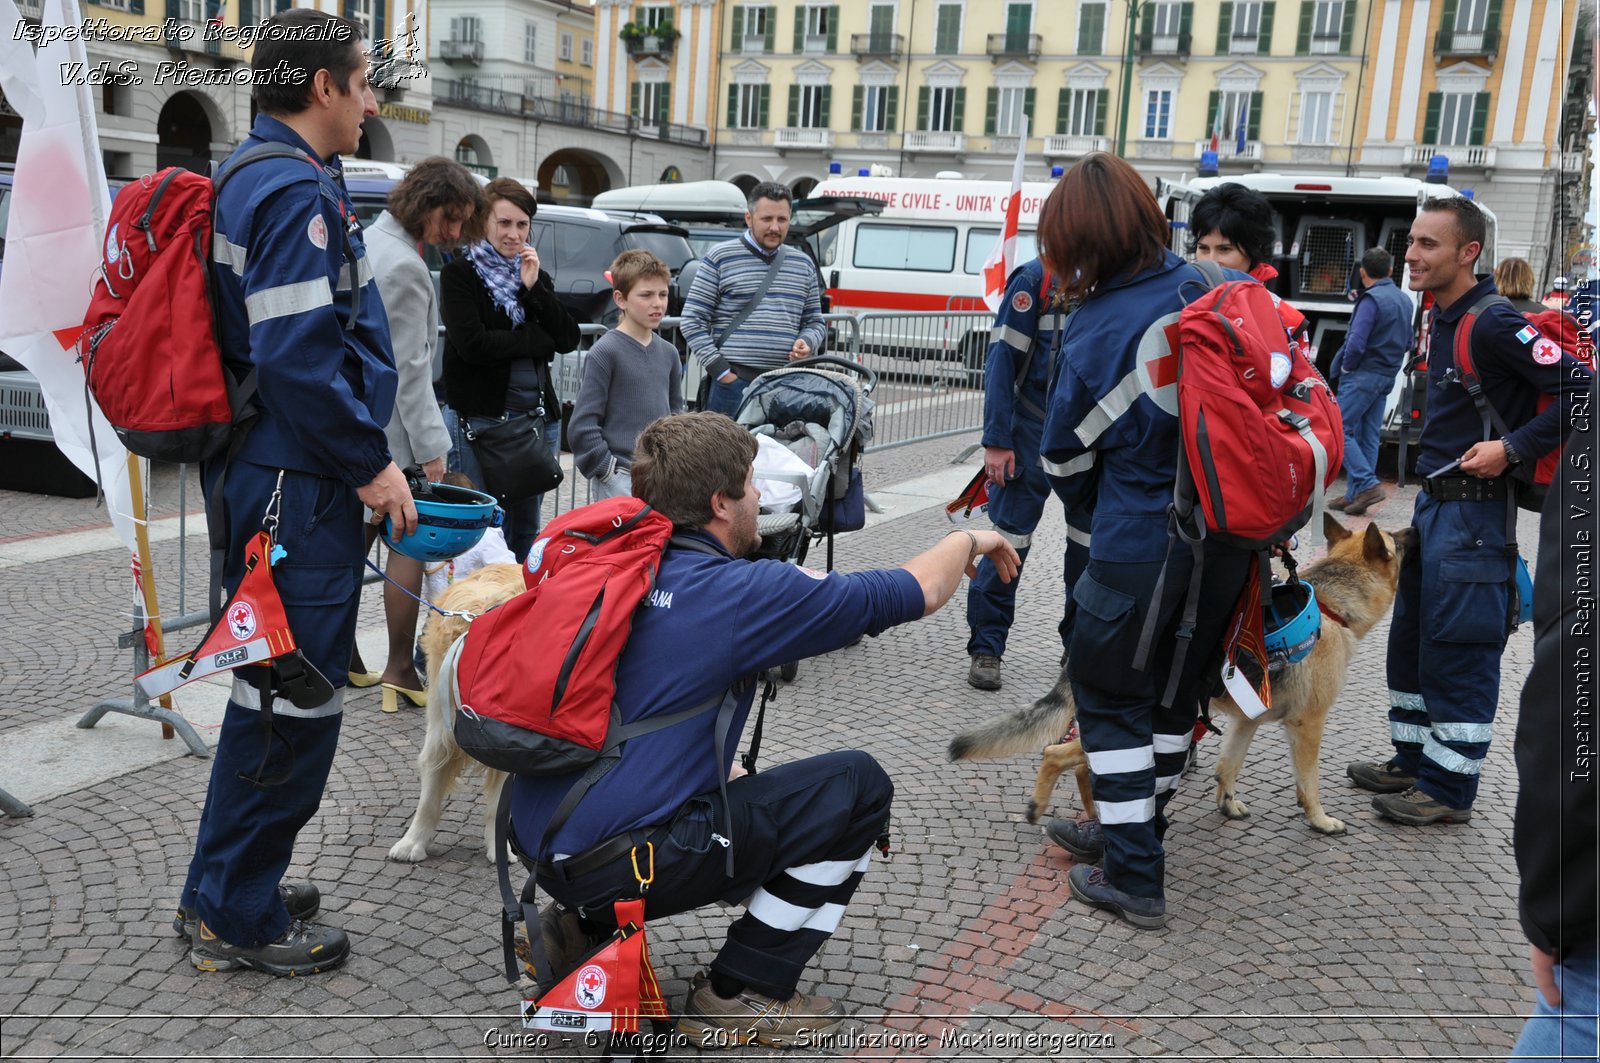 Cuneo - 6 Maggio 2012 - Simulazione Maxiemergenza- Croce Rossa Italiana - Ispettorato Regionale Volontari del Soccorso Piemonte